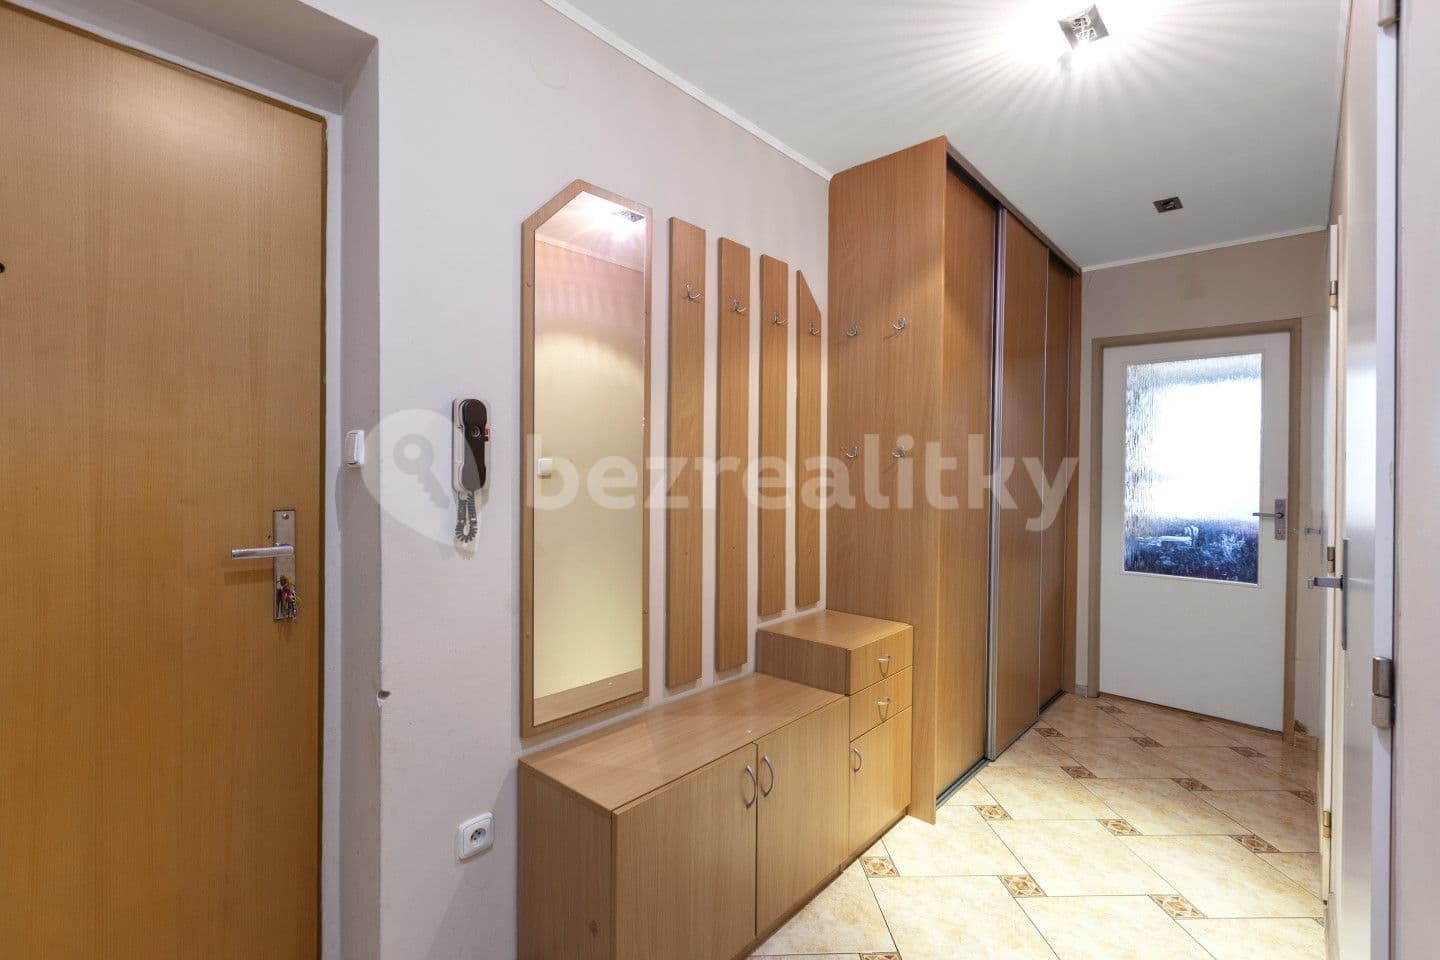 1 bedroom with open-plan kitchen flat for sale, 45 m², P. Bezruče, Nová Paka, Královéhradecký Region